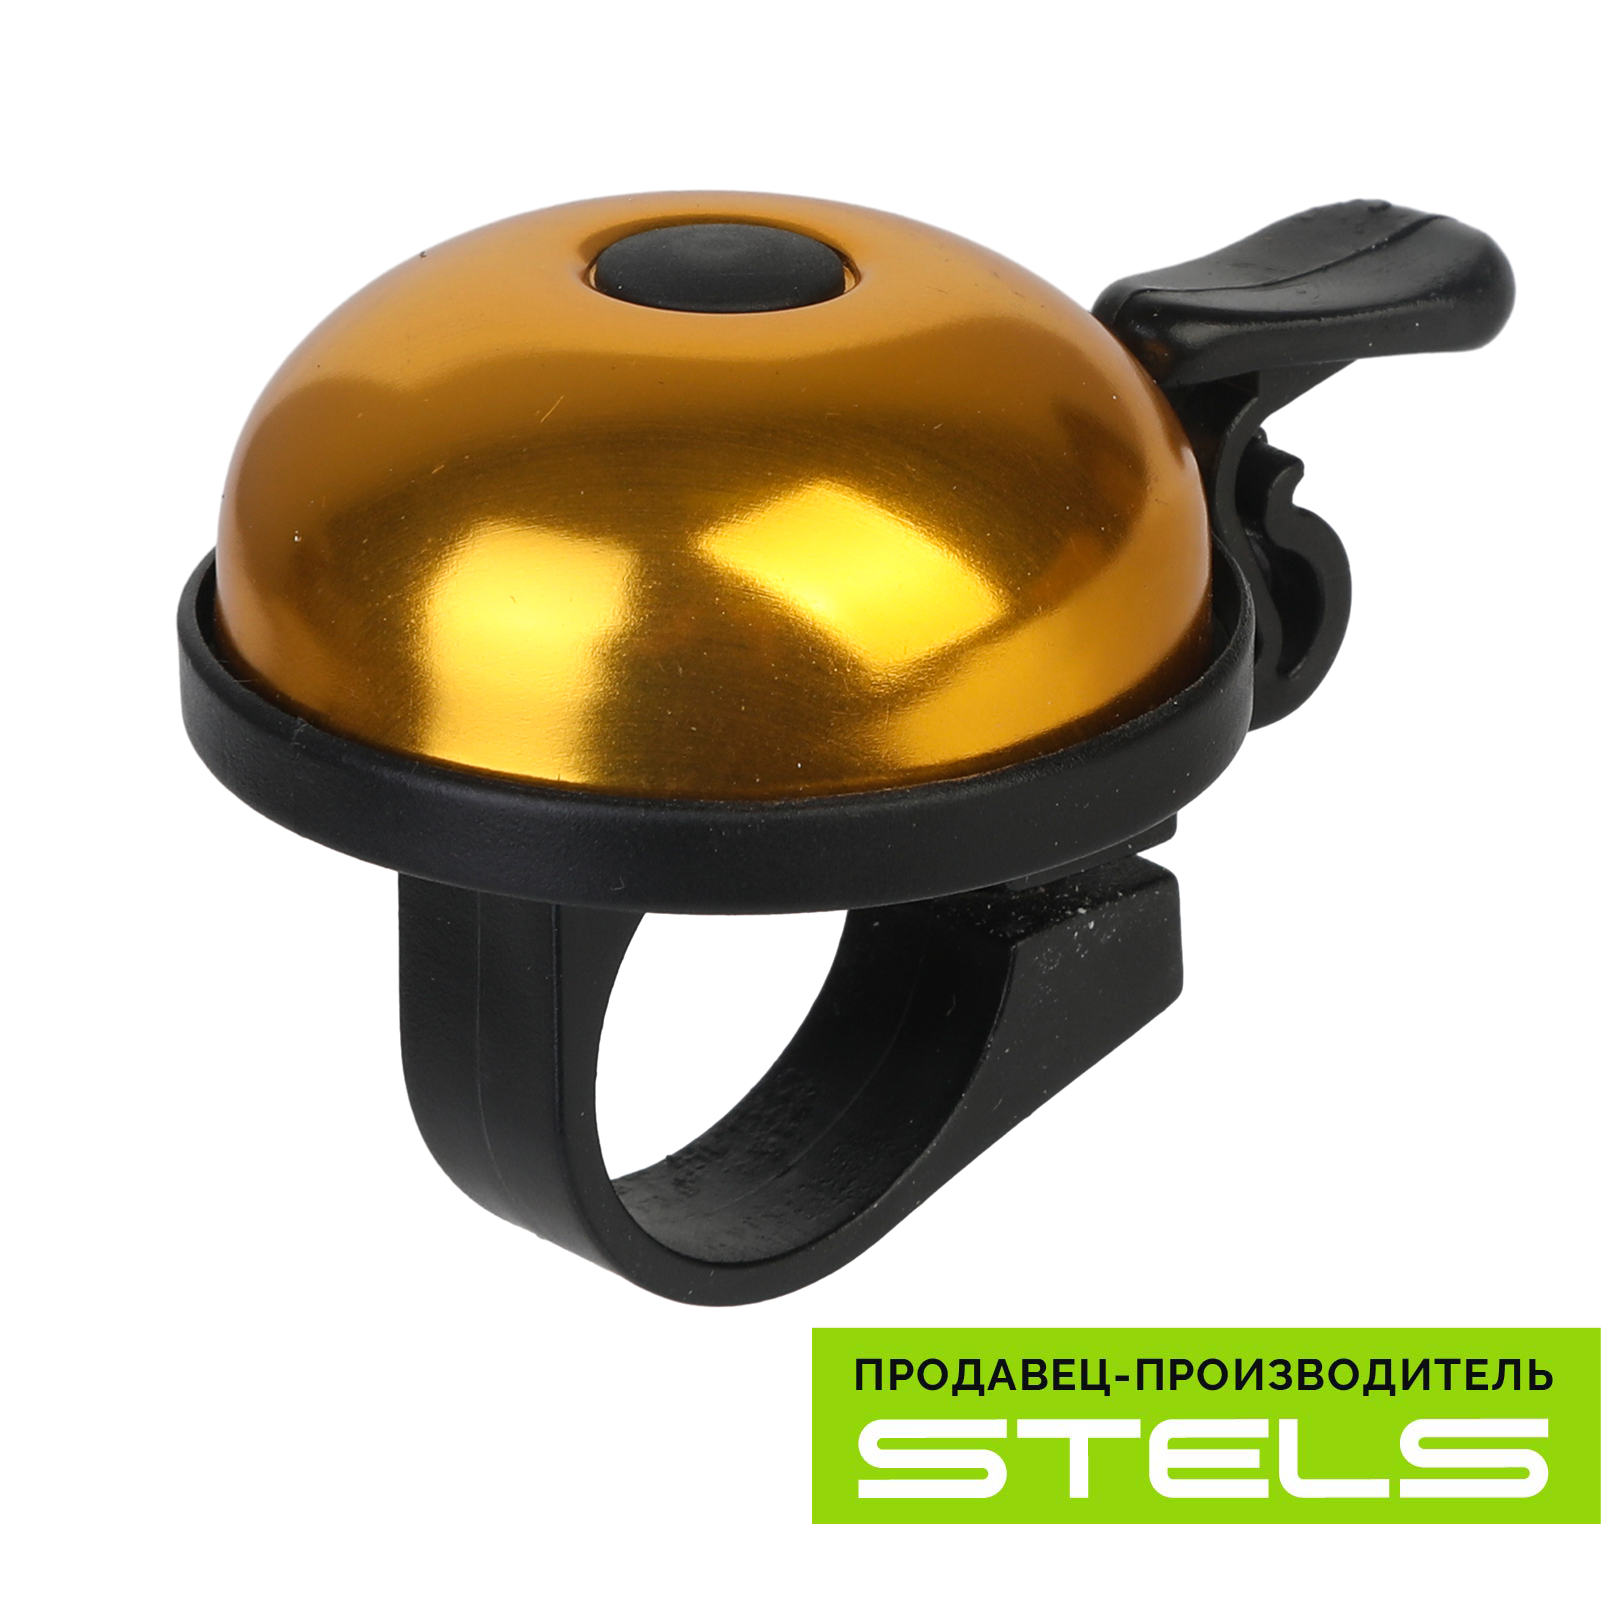 Звонок для велосипеда STELS 16A-02 алюминий/пластик, чёрно-золотистый (item:020)